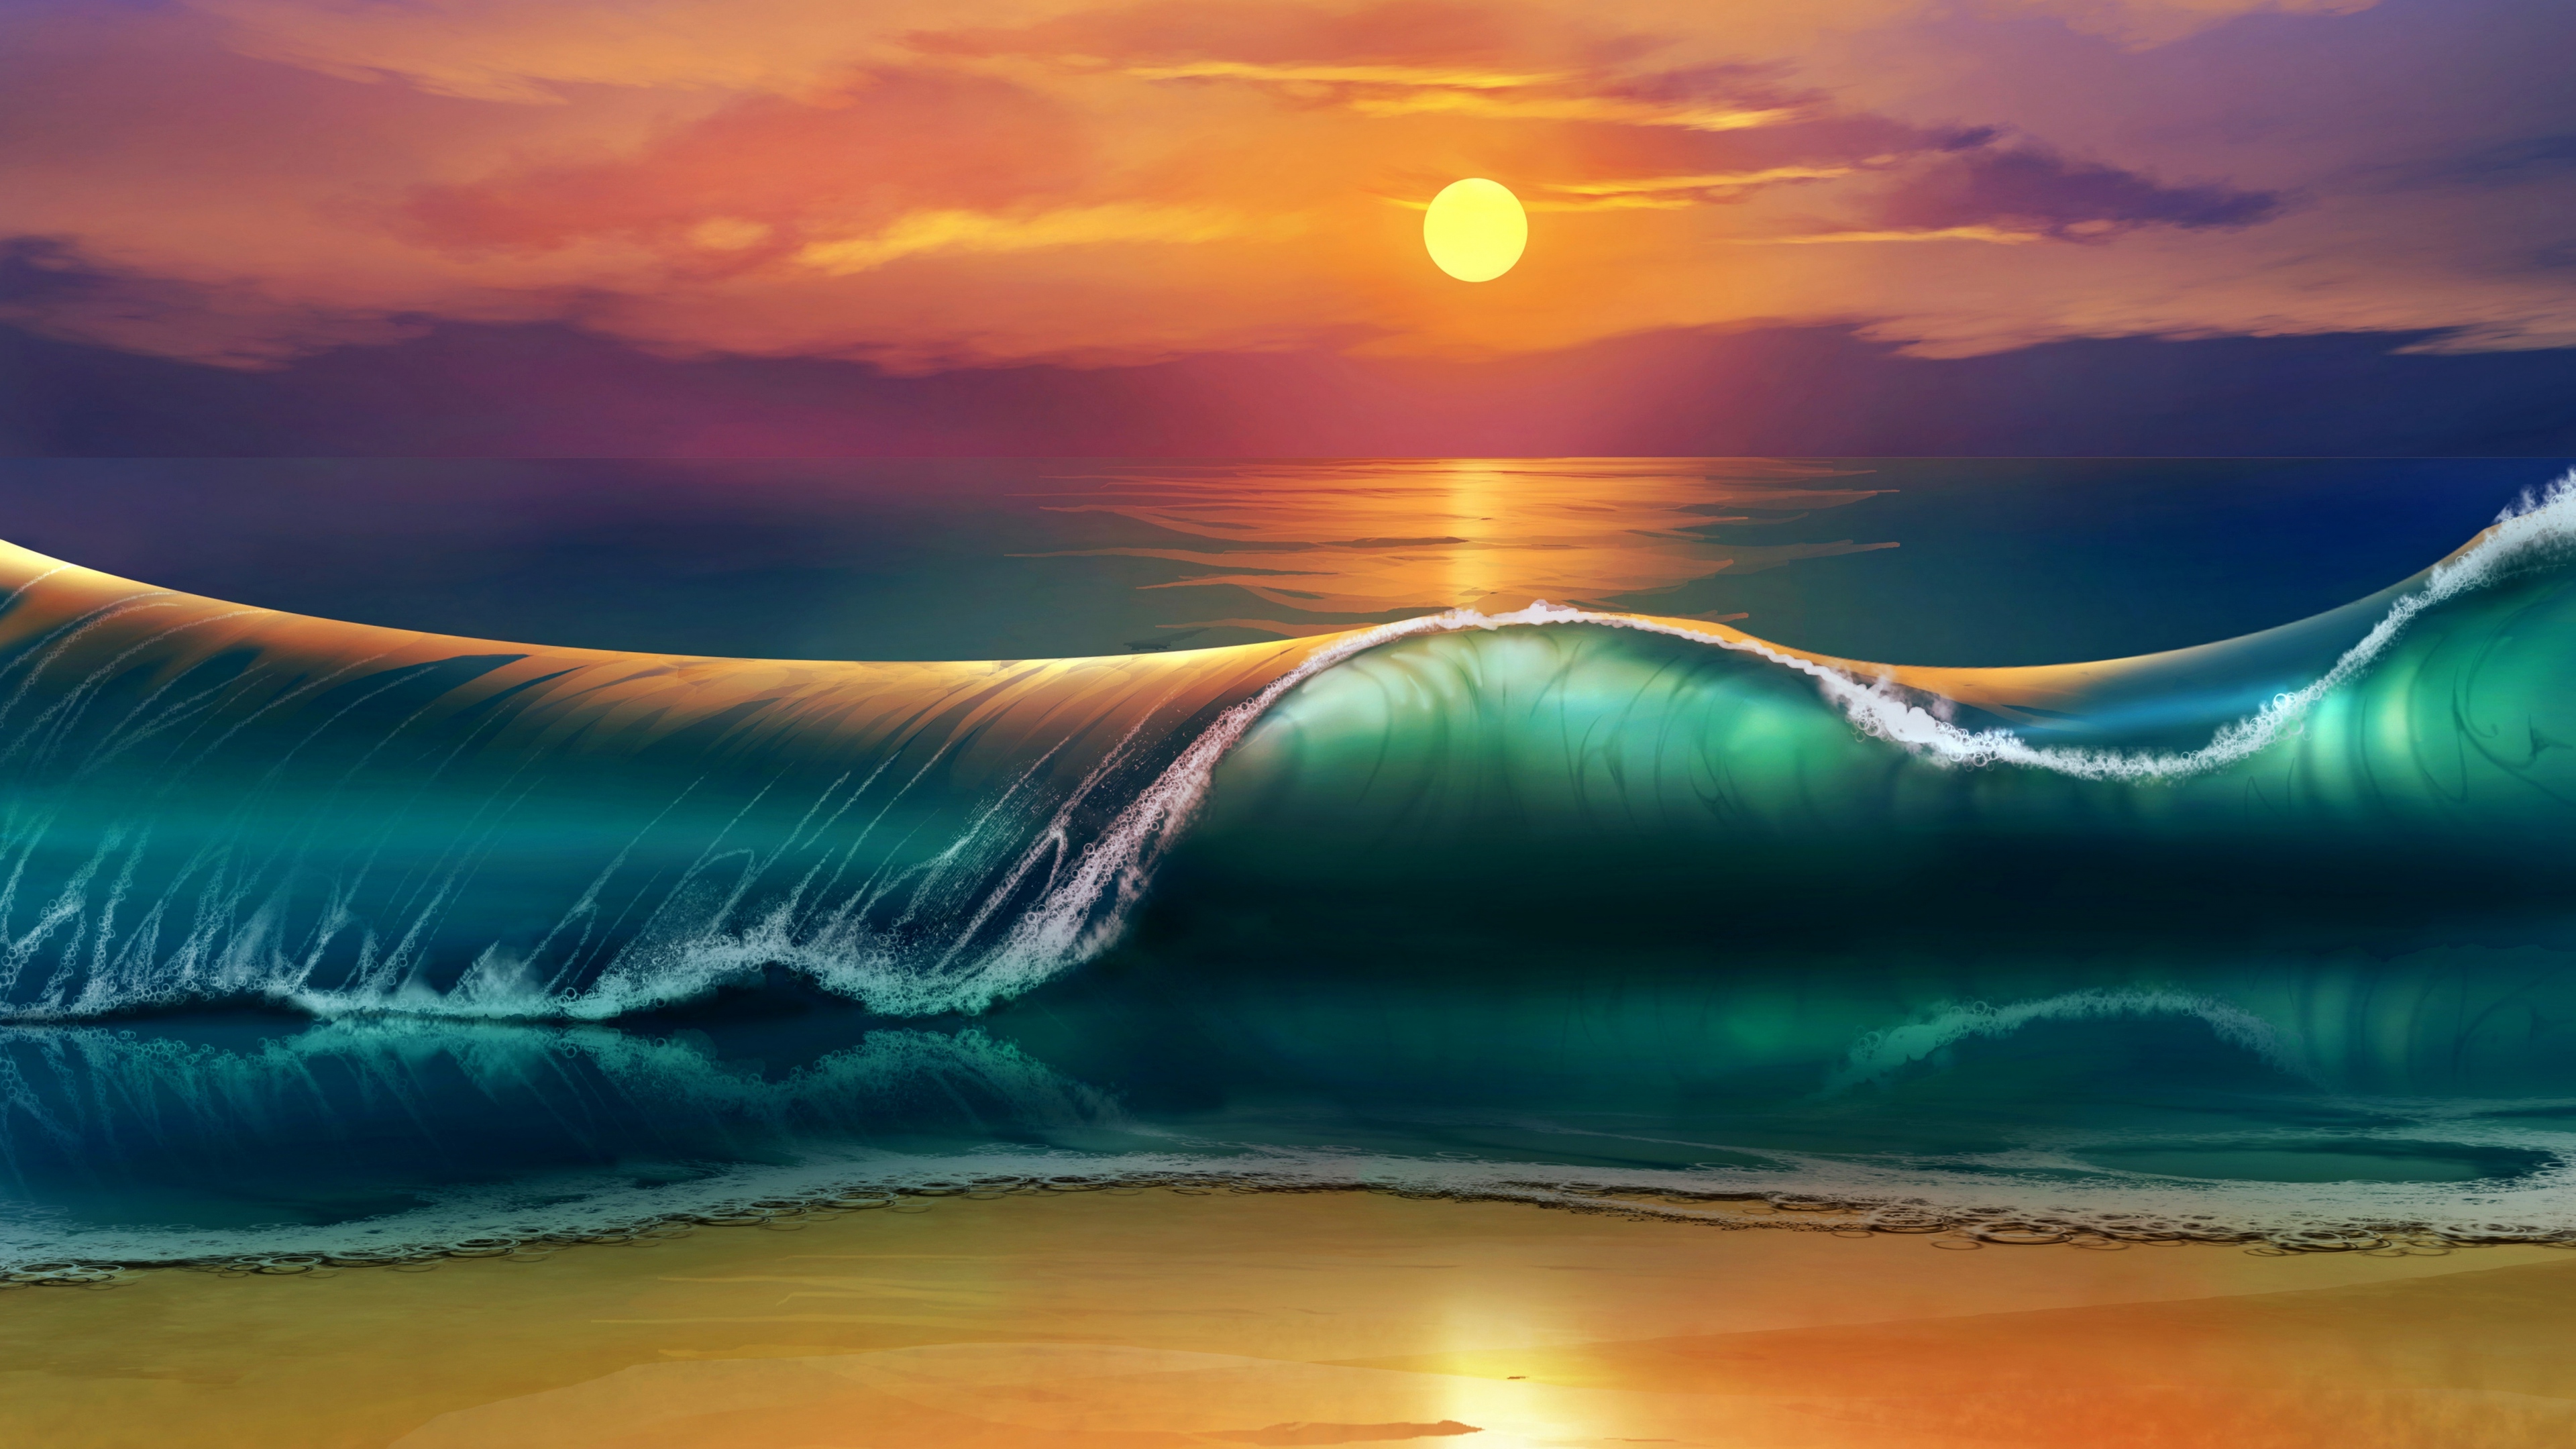 Sea Waves 4k Ultra HD Background Wallpaper